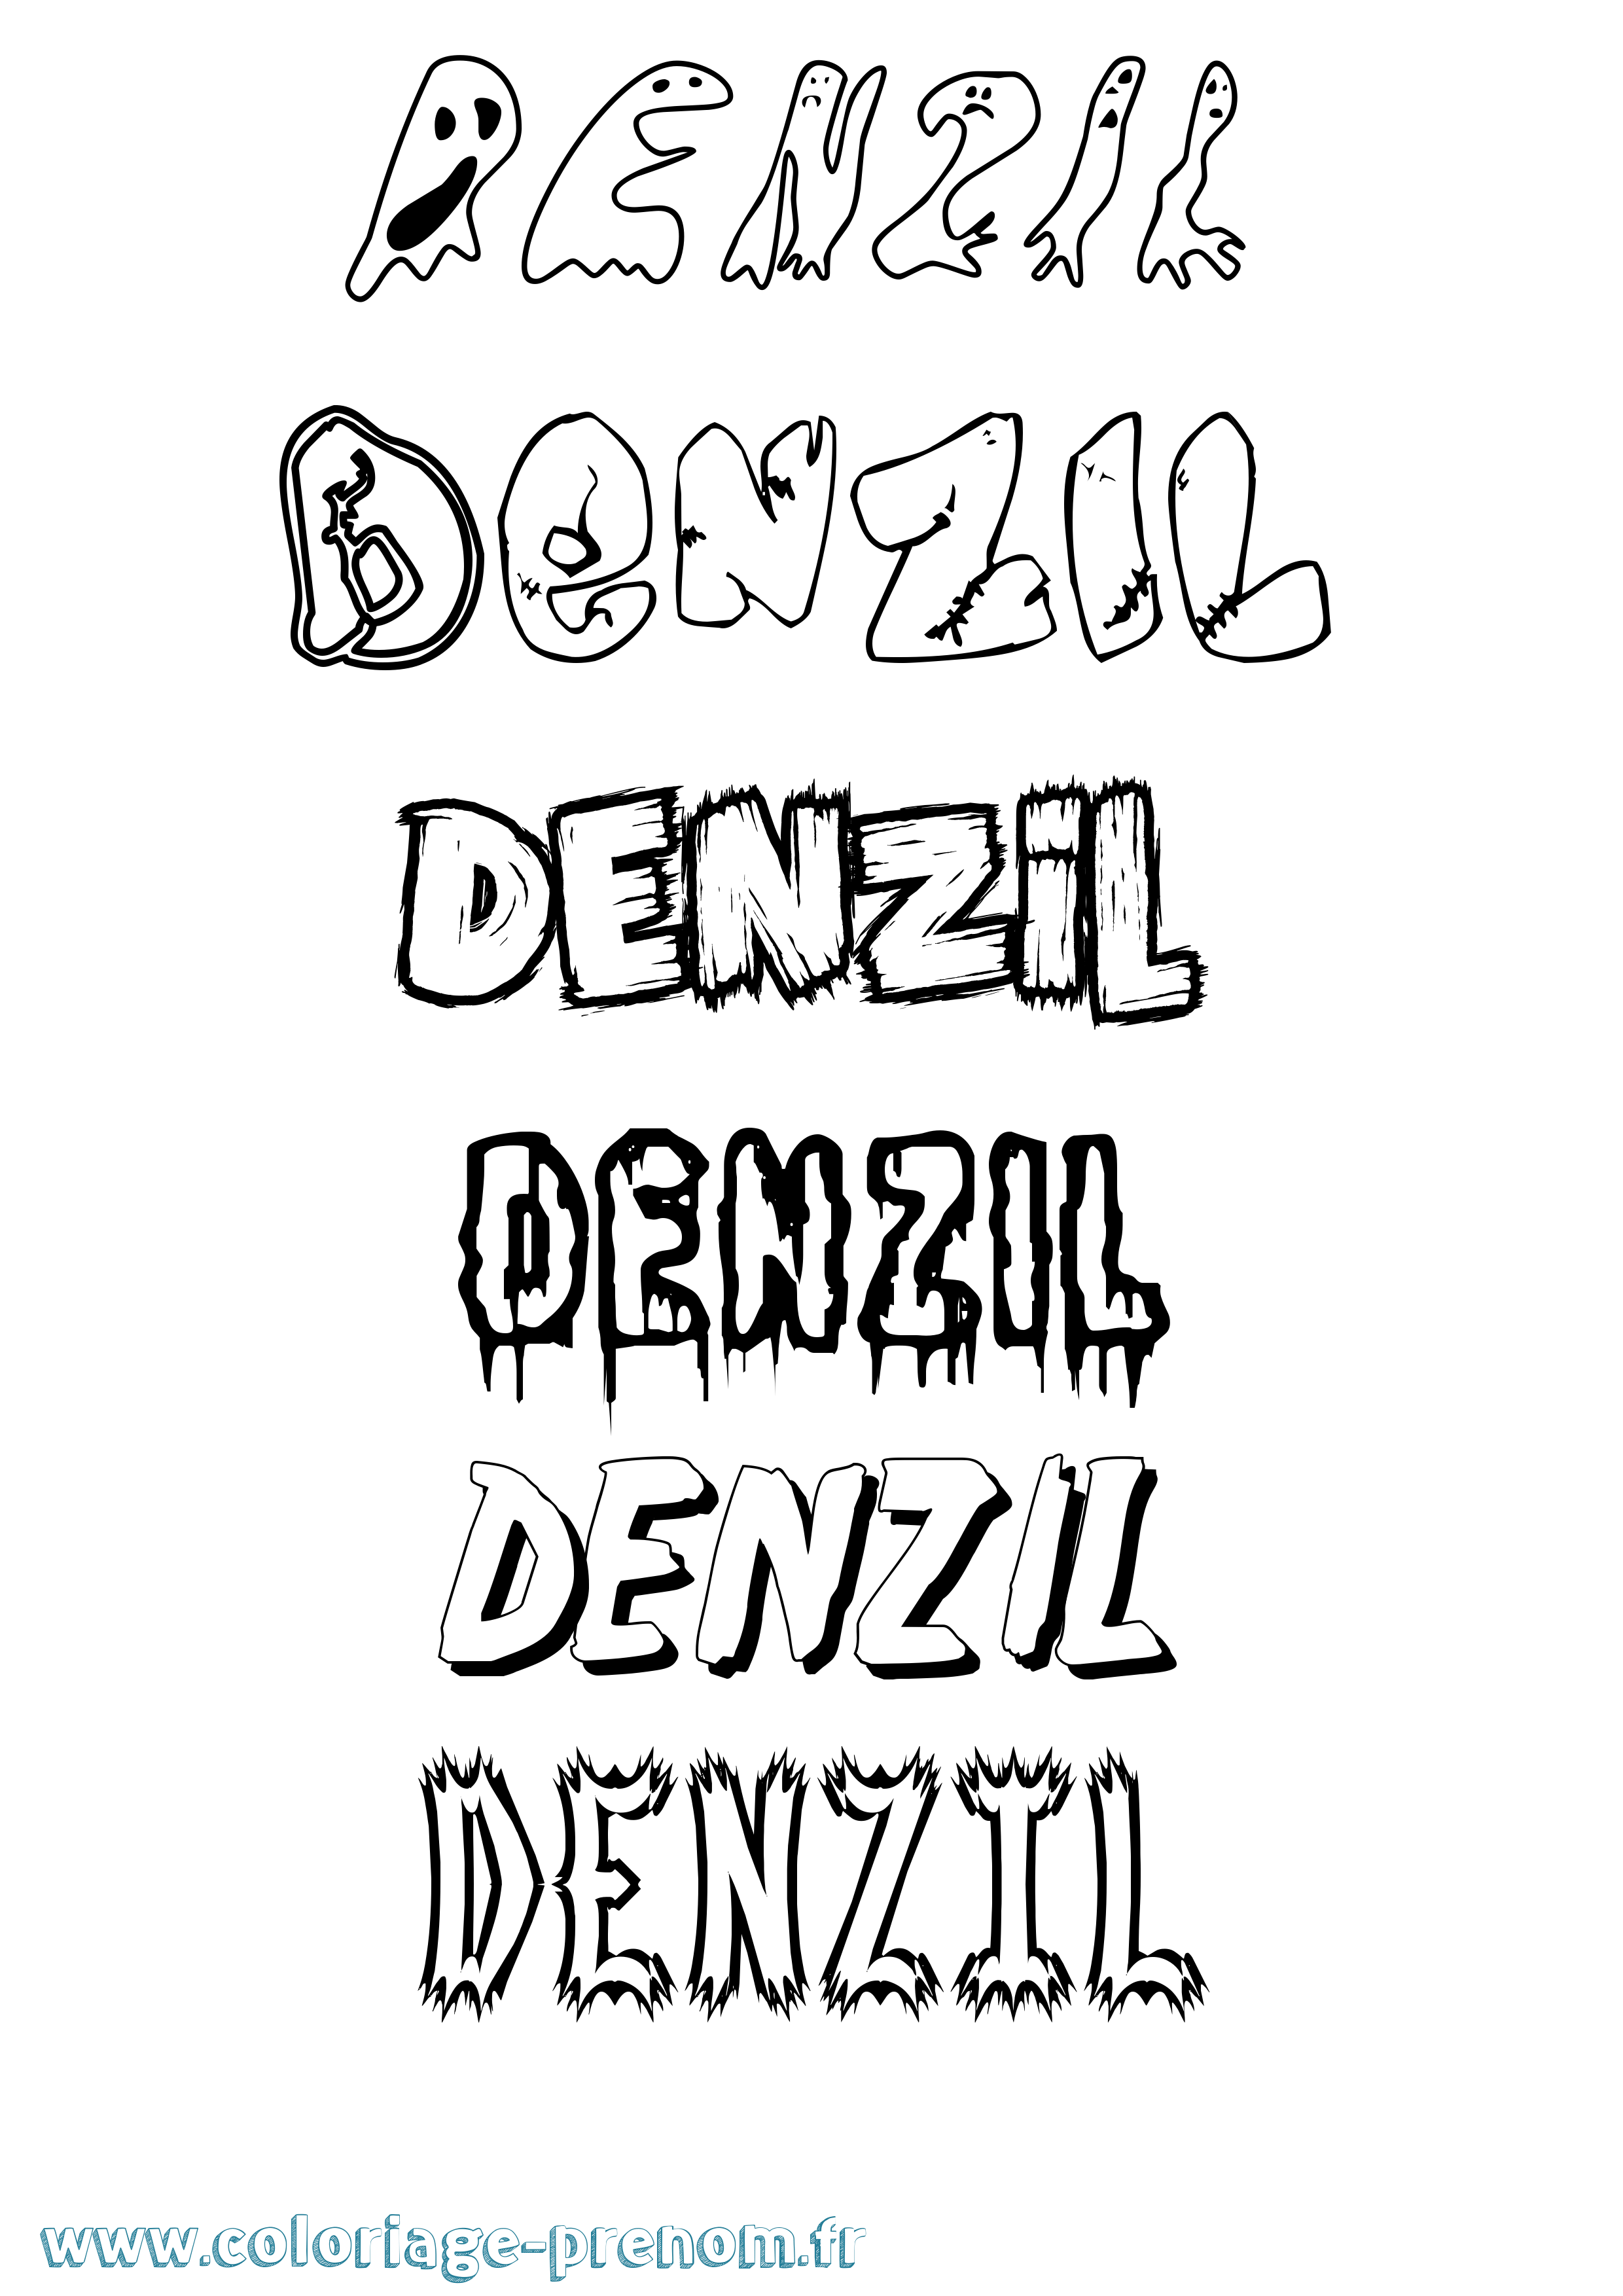 Coloriage prénom Denzil Frisson